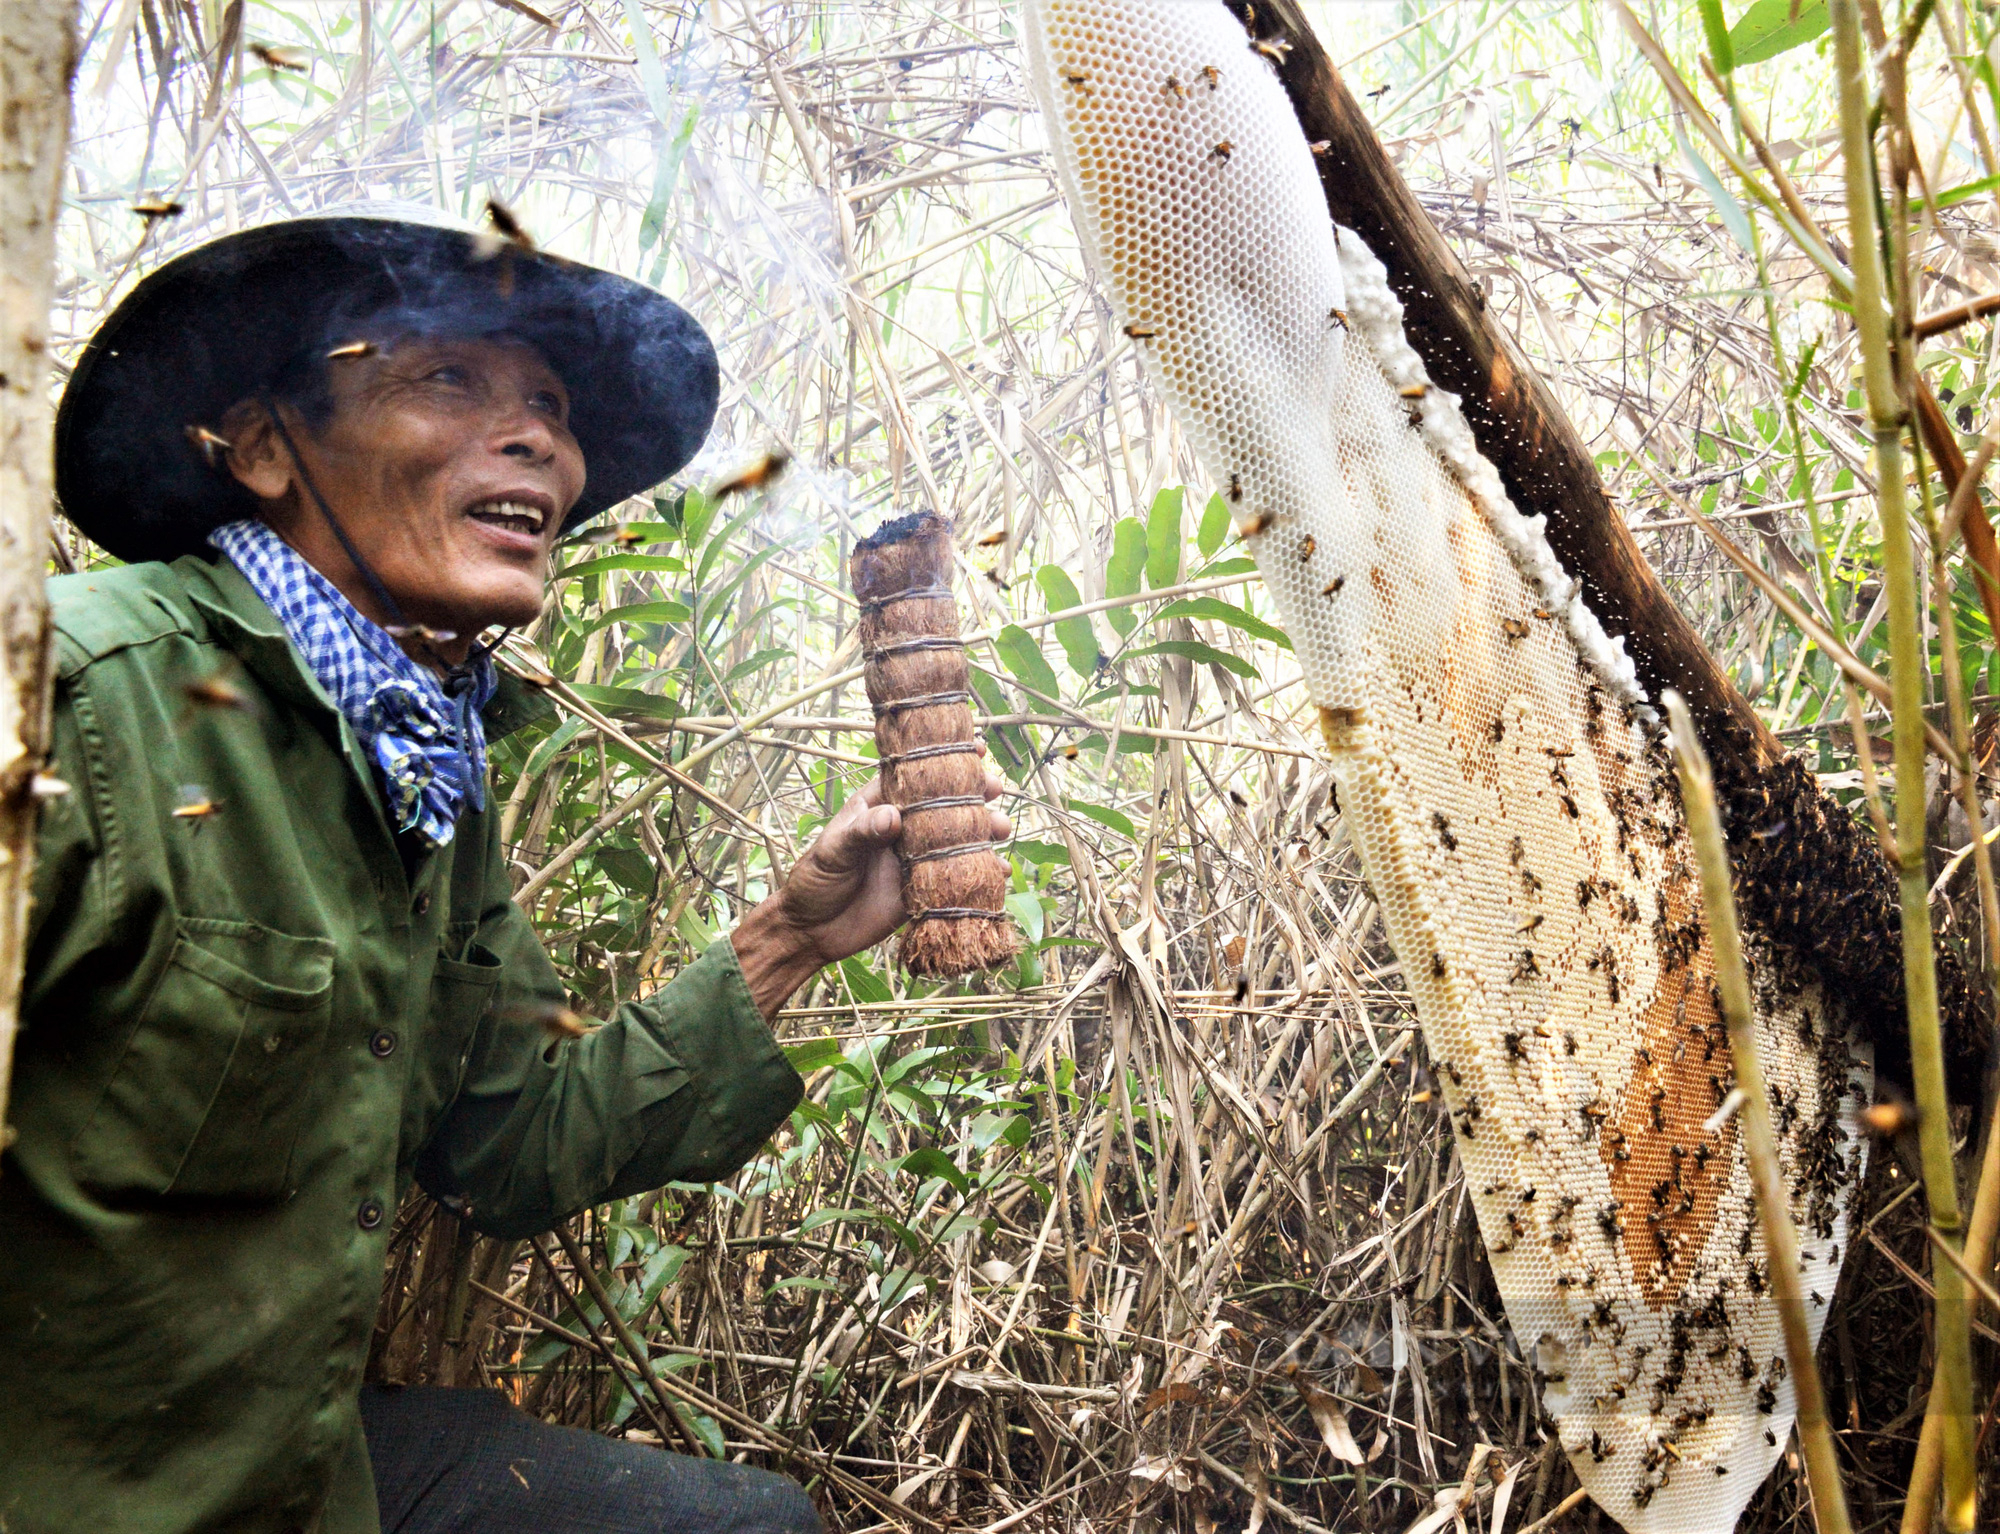 Cận cảnh tổ ong mật của nghề gác kèo ong xác lập kỷ lục Việt Nam - Ảnh 1.